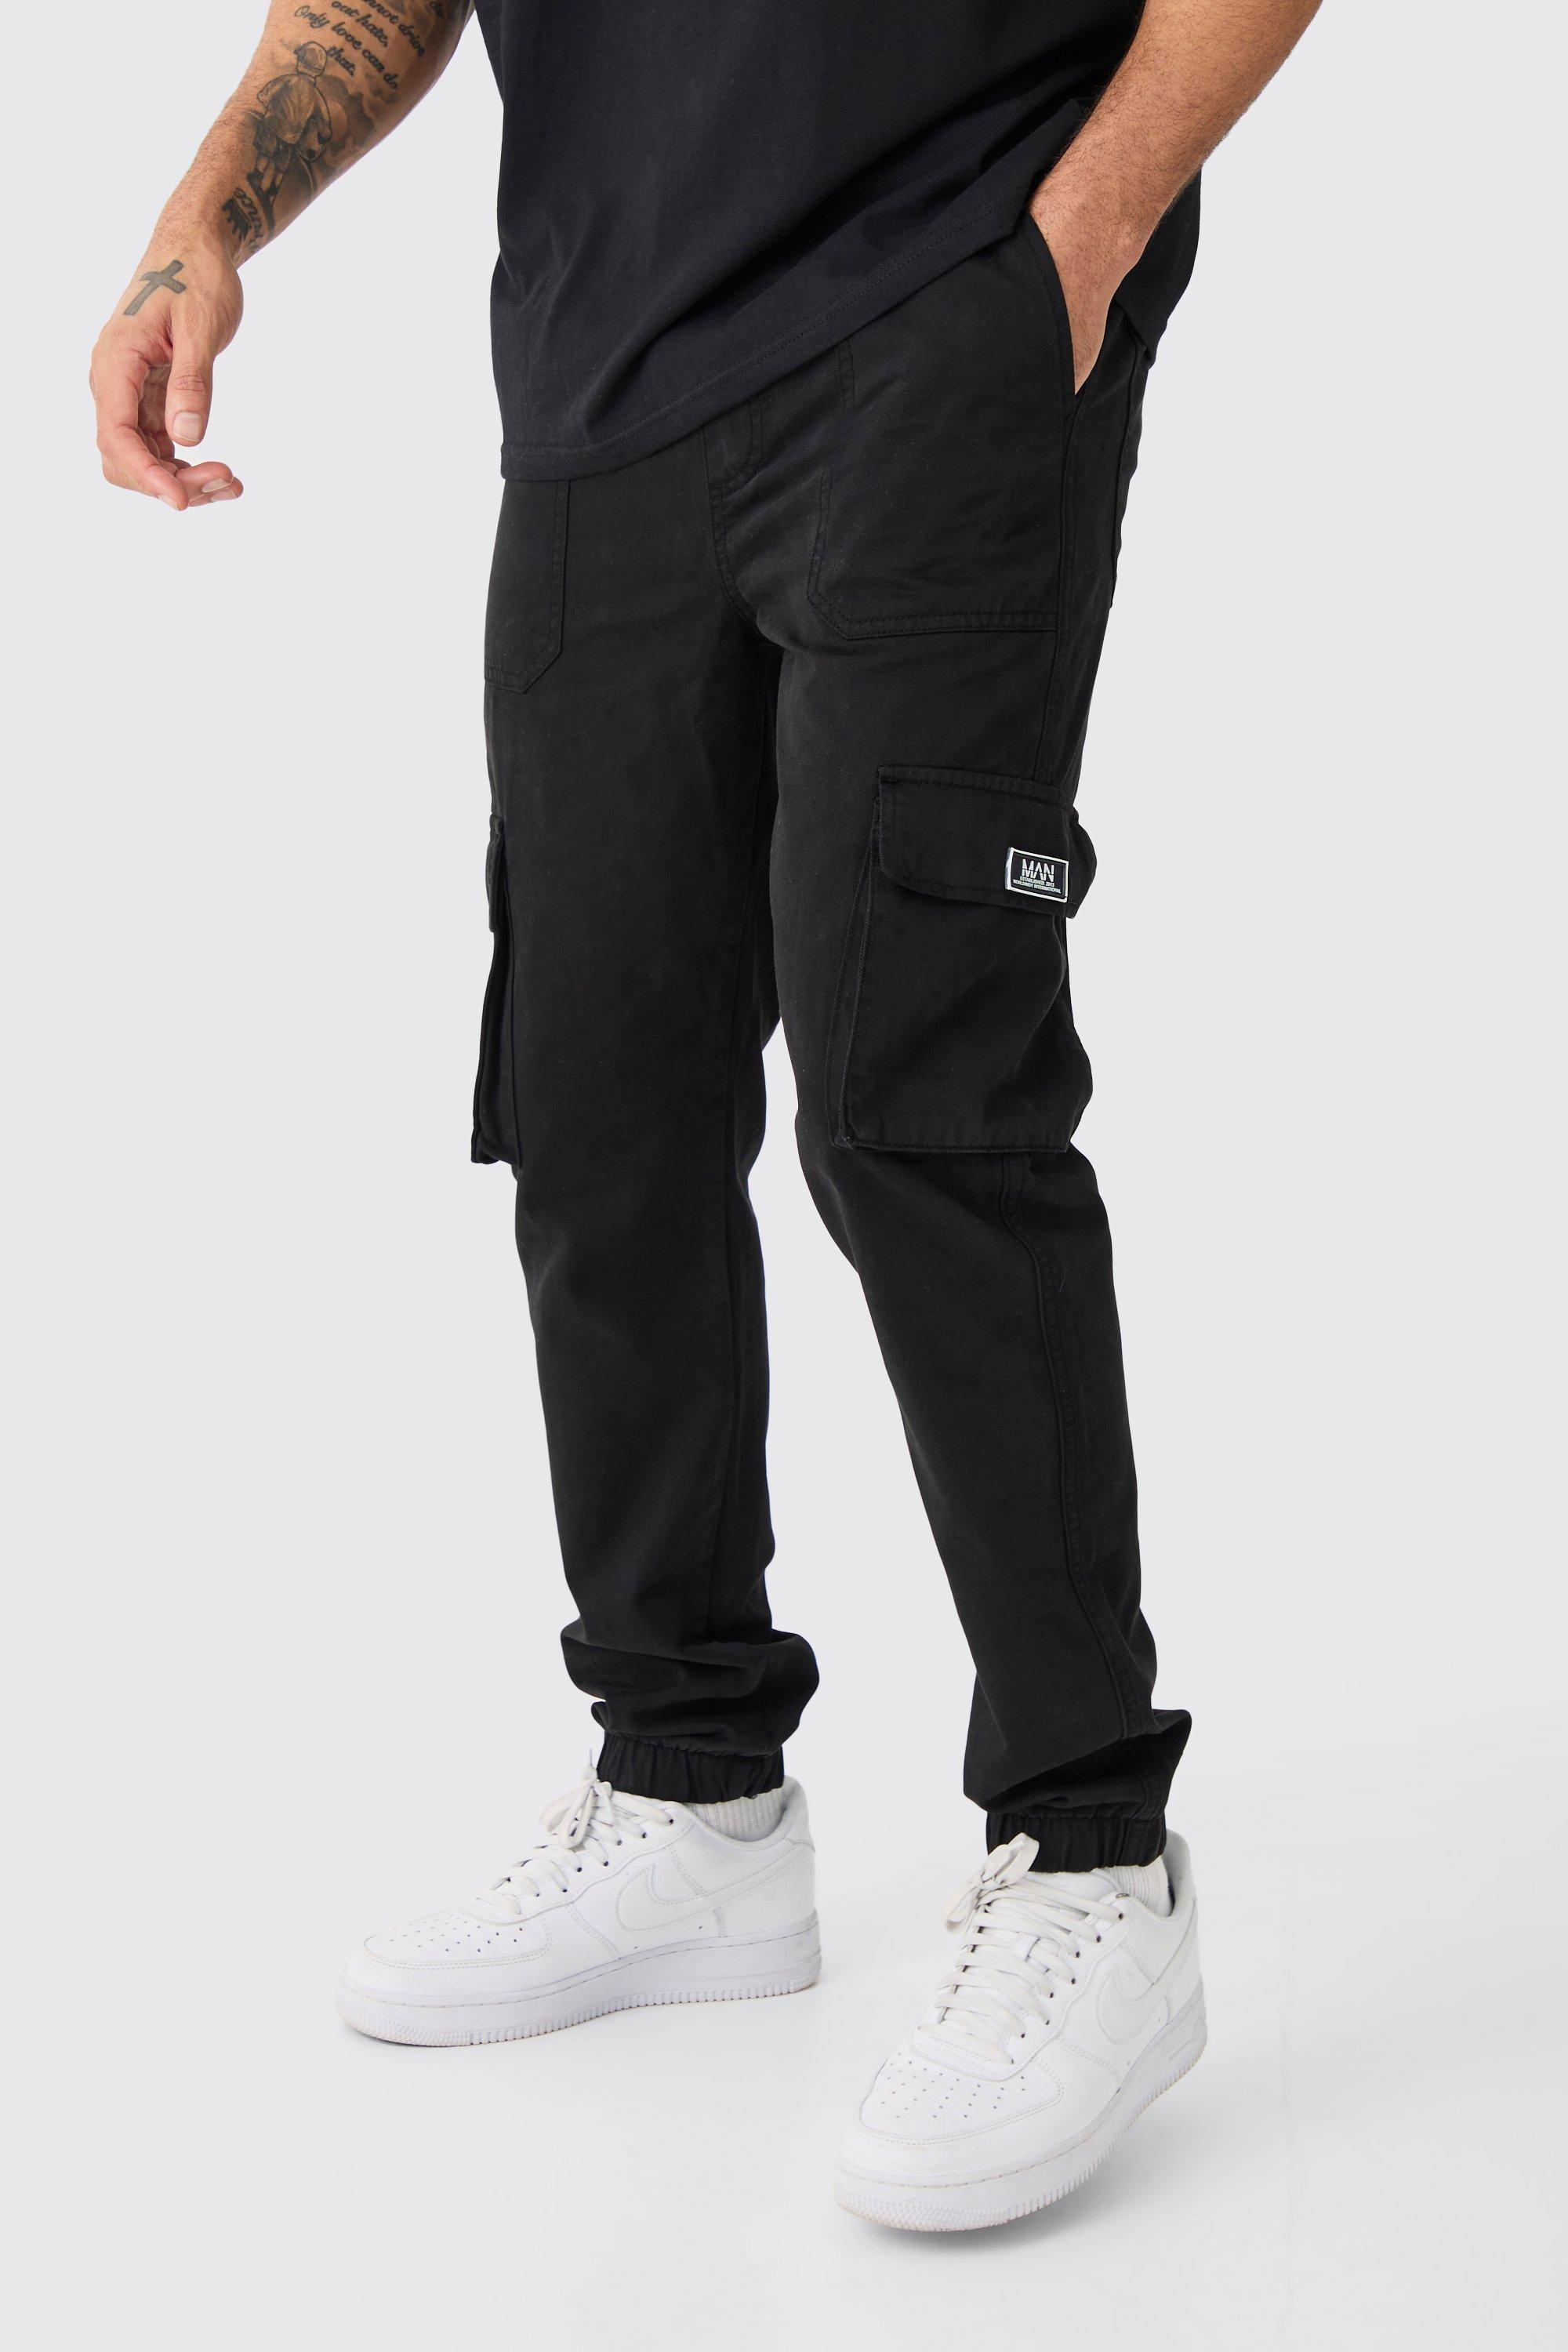 Image of Pantaloni tuta Cargo Slim Fit con elastico in vita e stemmi, Nero